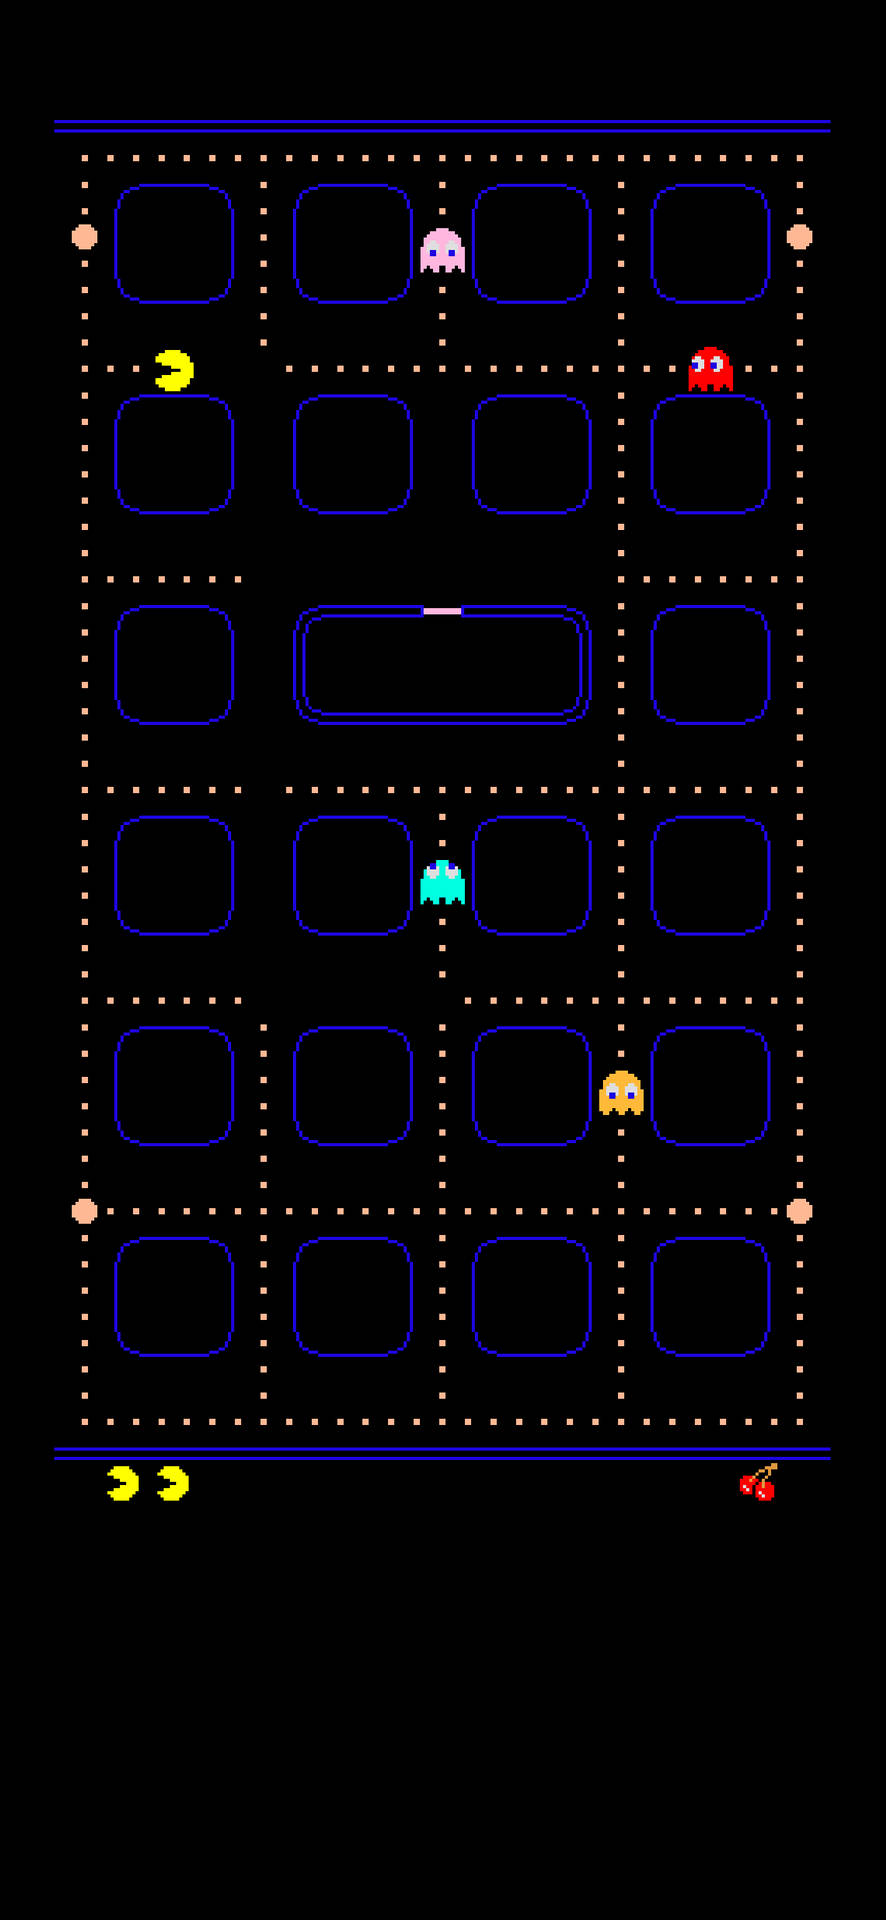 Pacmanè Un Celebre Videogioco Arcade Creato Da Toru Iwatani E Pubblicato Nel 1980 Da Namco. Il Gioco Ha Un Protagonista Che È Una Piccola Creatura Gialla A Forma Di Cerchio, Chiamata Pacman. L'obiettivo Del Gioco È Guidare Pacman Attraverso Un Labirinto, Mangiando Tutti I Puntini Sparsi Sul Percorso, Mentre Si Evita Di Essere Catturati Dai Fantasma Che Infestano Il Labirinto. Ogni Volta Che Pacman Mangia Una Piccola Pillola Speciale, I Fantasma Diventano Vulnerabili E Pacman Ha La Possibilità Di Mangiarli Per Un Breve Periodo Di Tempo. Il Gioco Si Conclude Quando Tutti I Puntini Sono Stati Mangiati E Si Passa Al Livello Successivo, Dove La Difficoltà Aumenta. Pacman È Diventato Uno Dei Sfondo